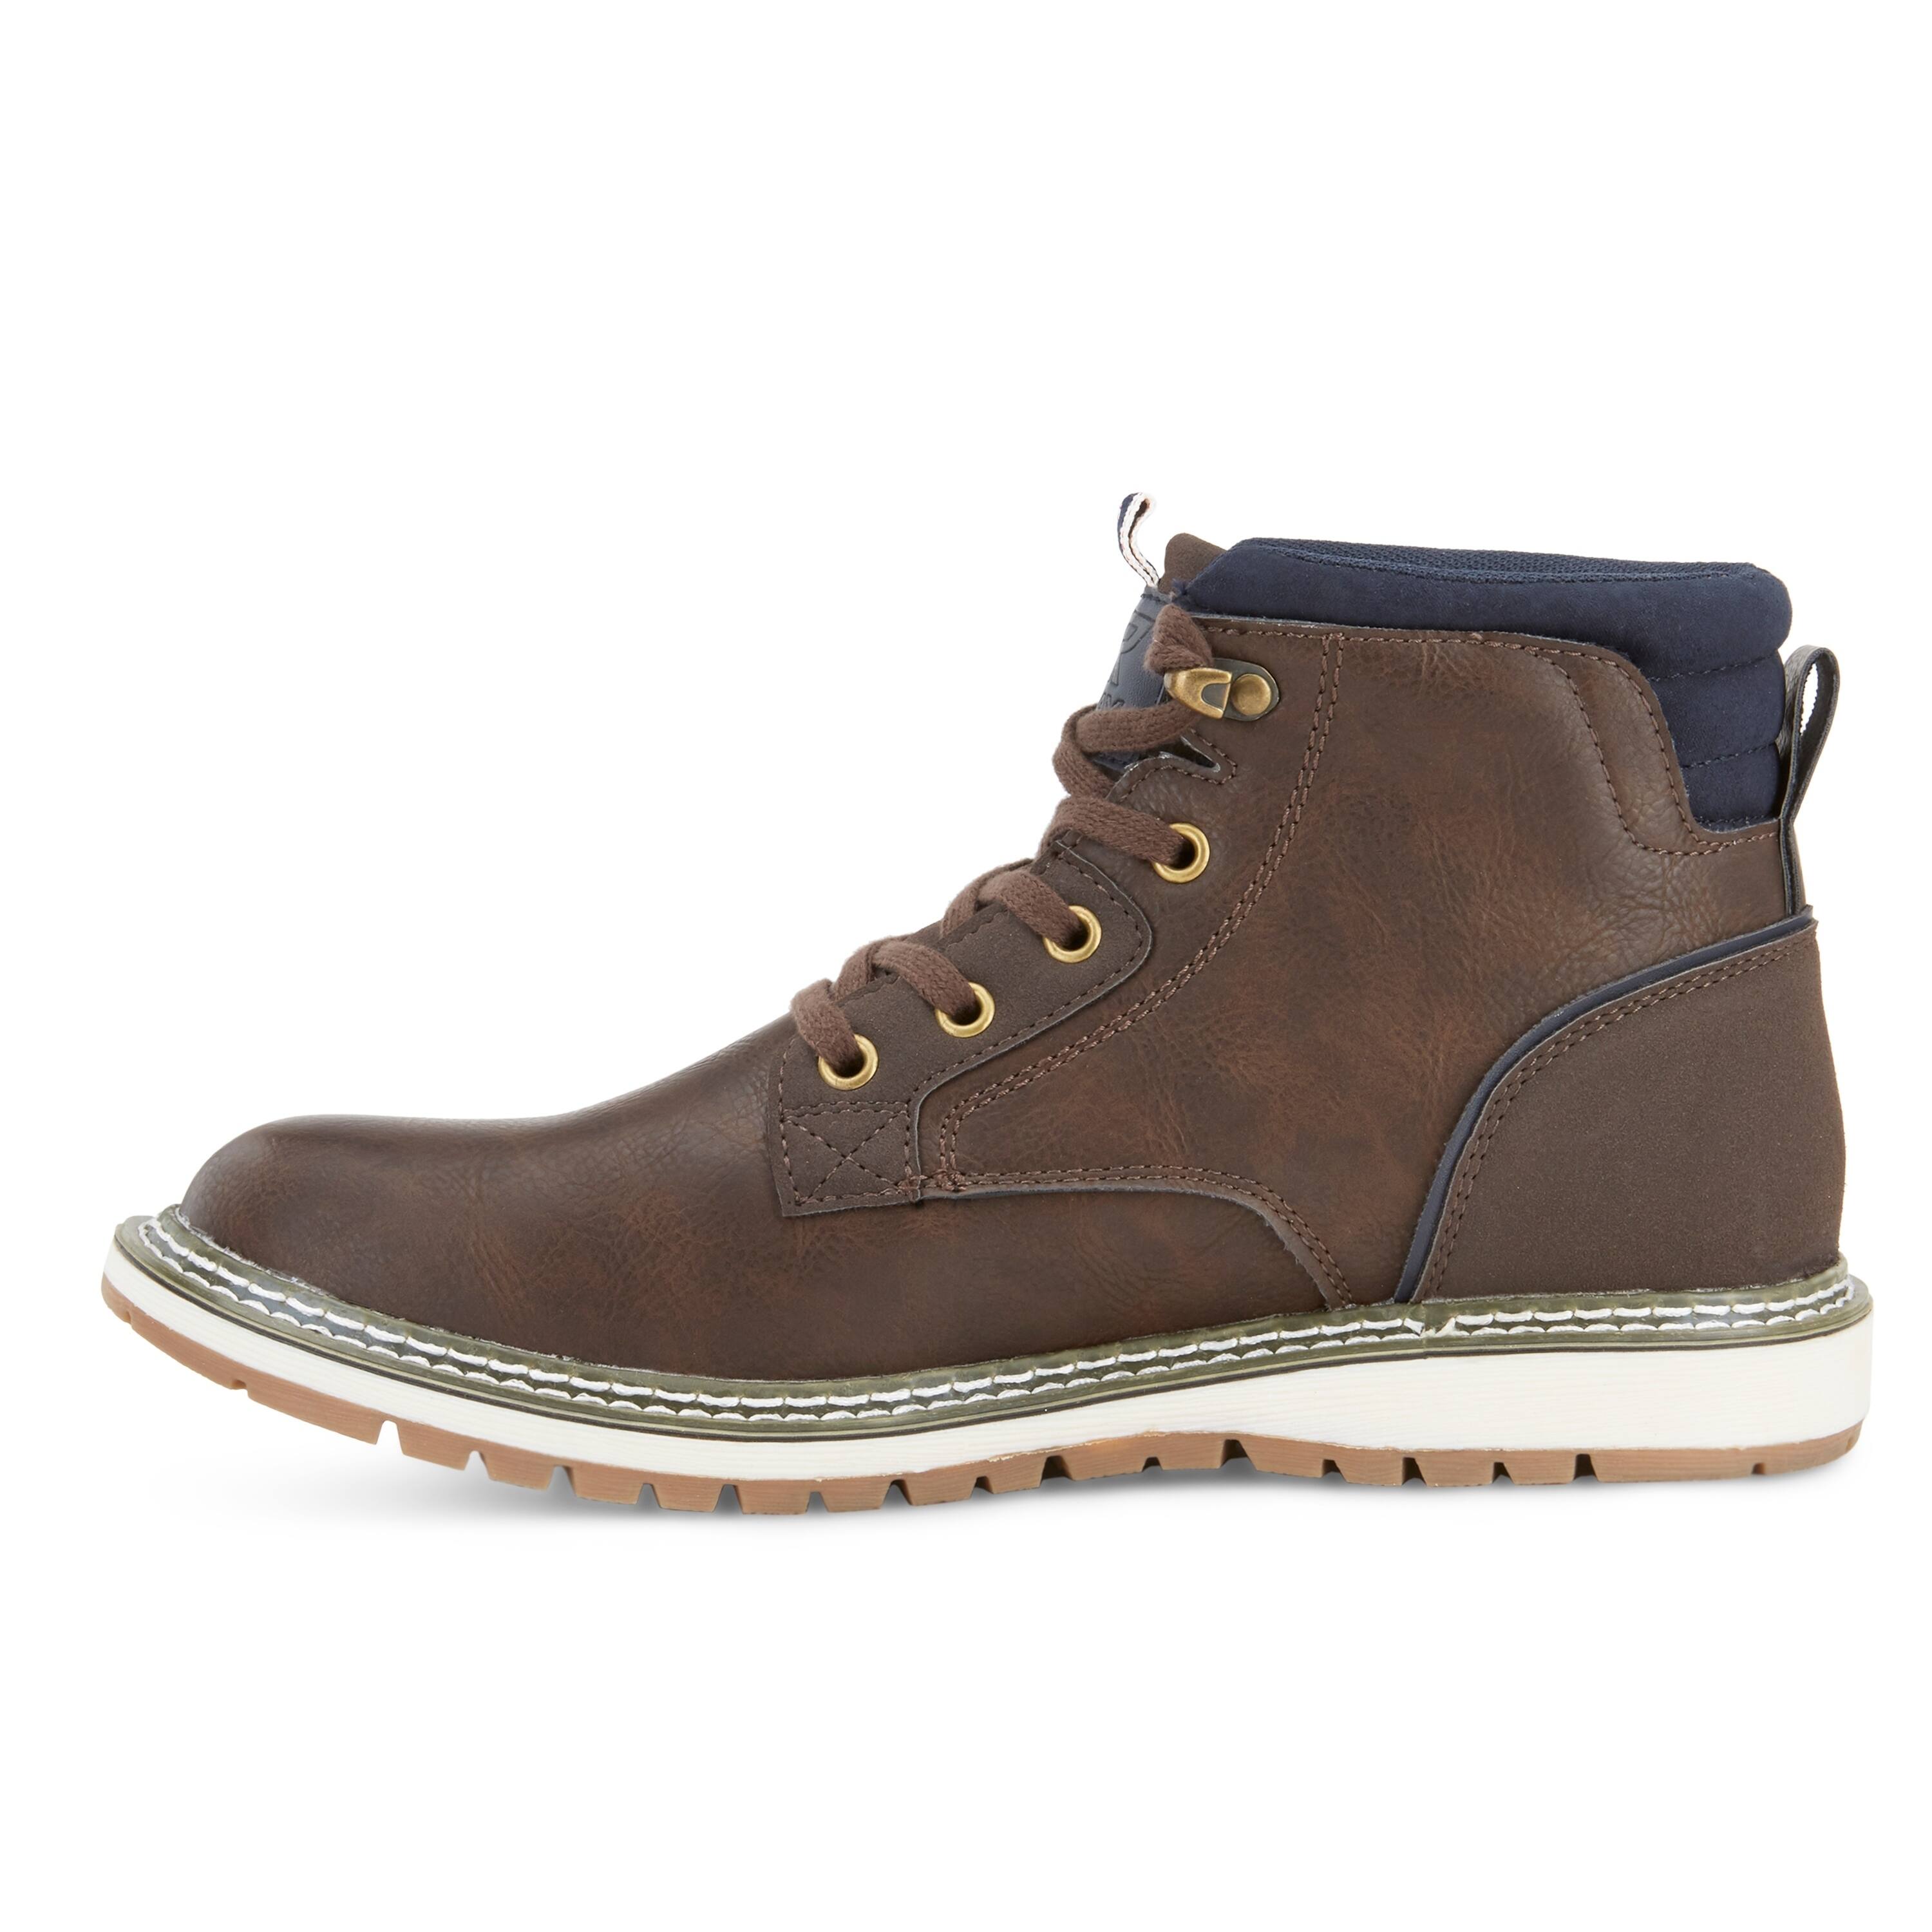 Buy Men's Boots Online at Overstock | Our Best Men's Shoes Deals